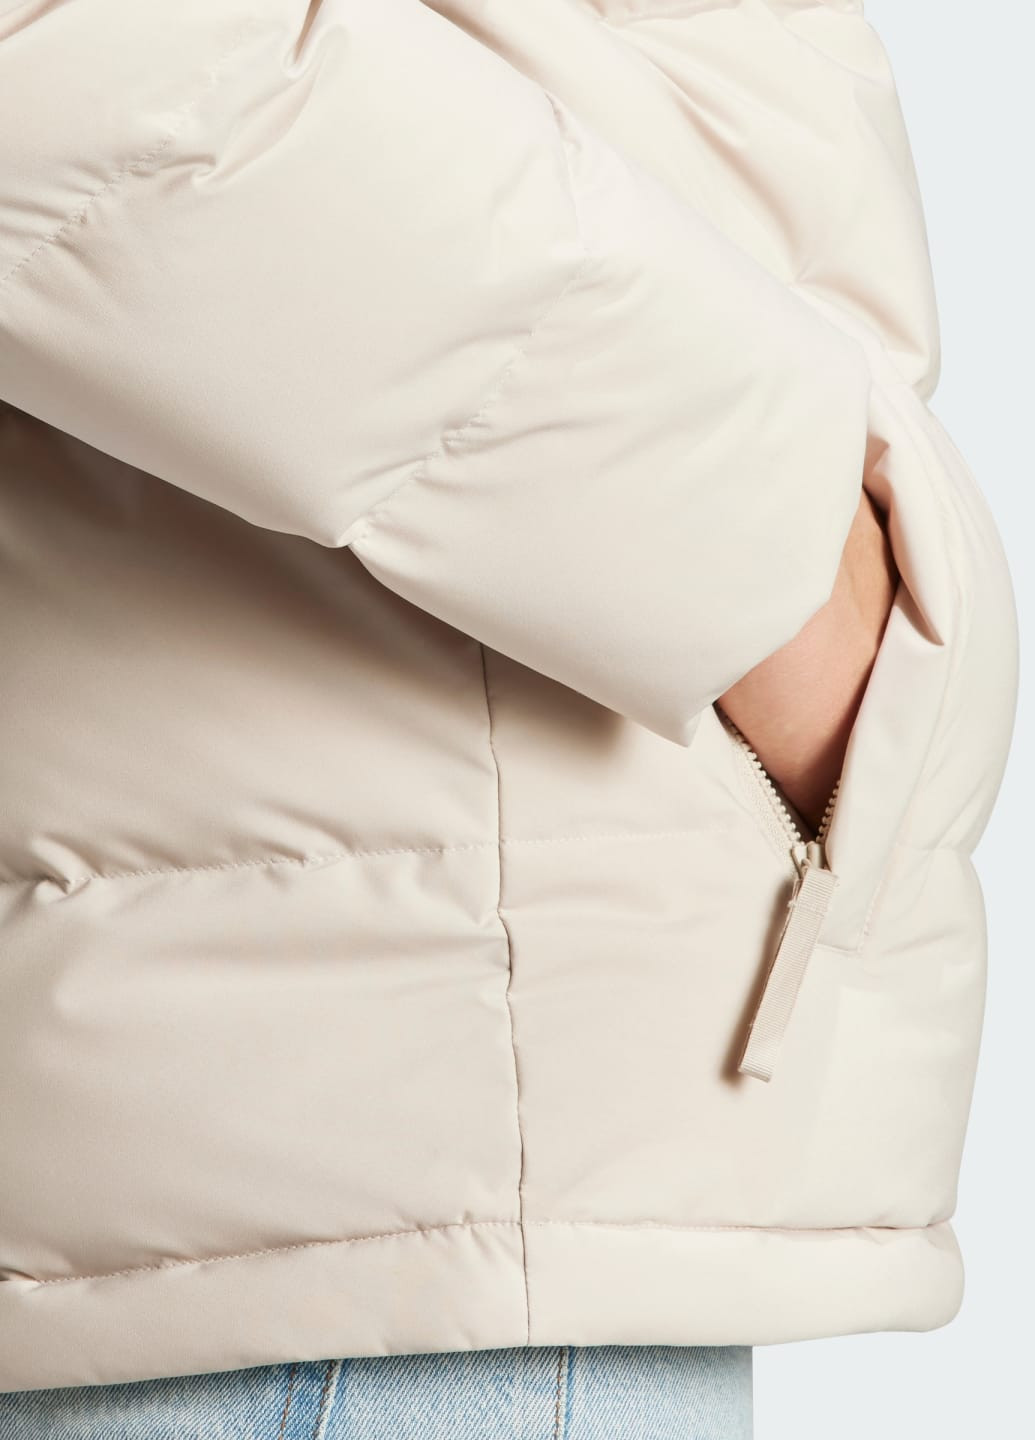 Бежевая демисезонная куртка с капюшоном helionic adidas